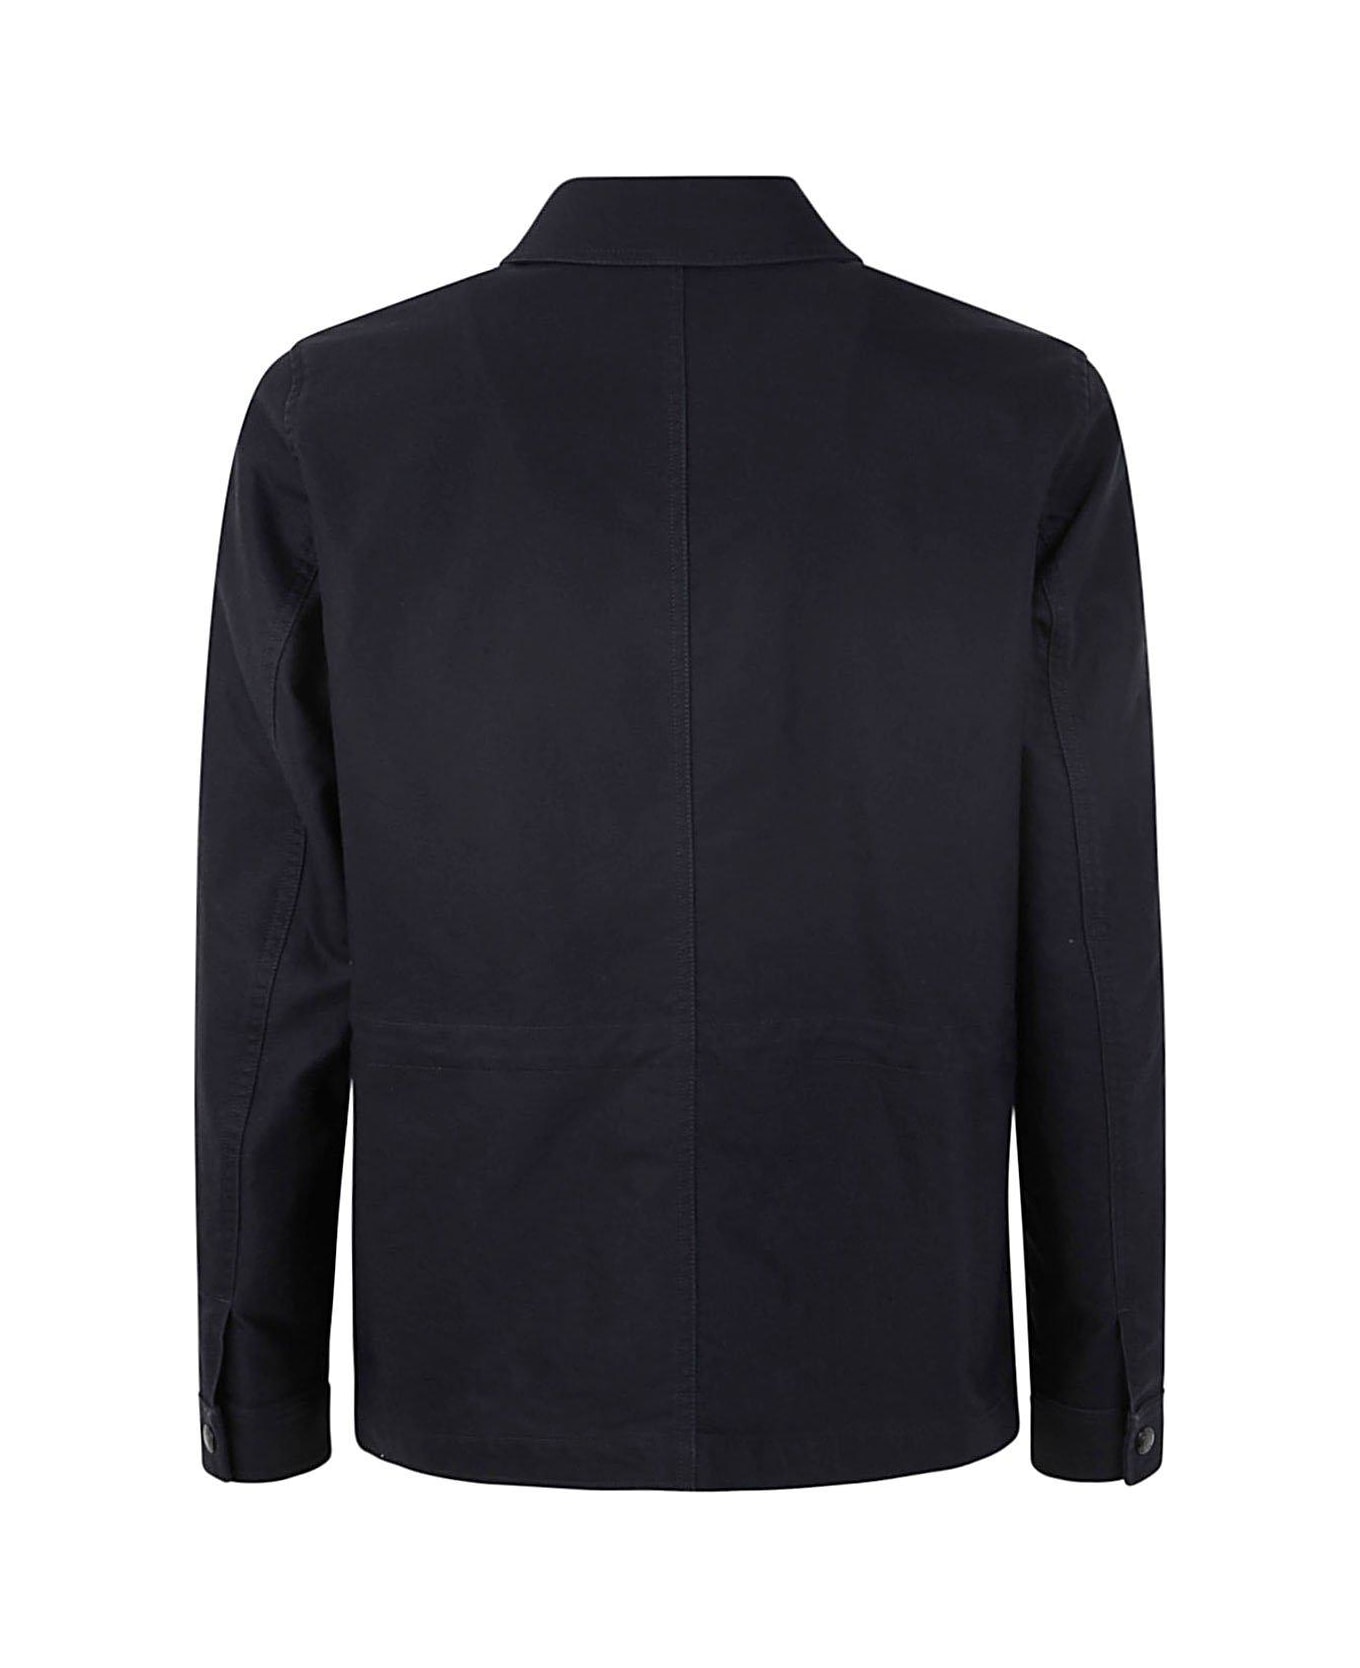 Tom Ford Chest Pocket Shirt Jacket - Blu Navy